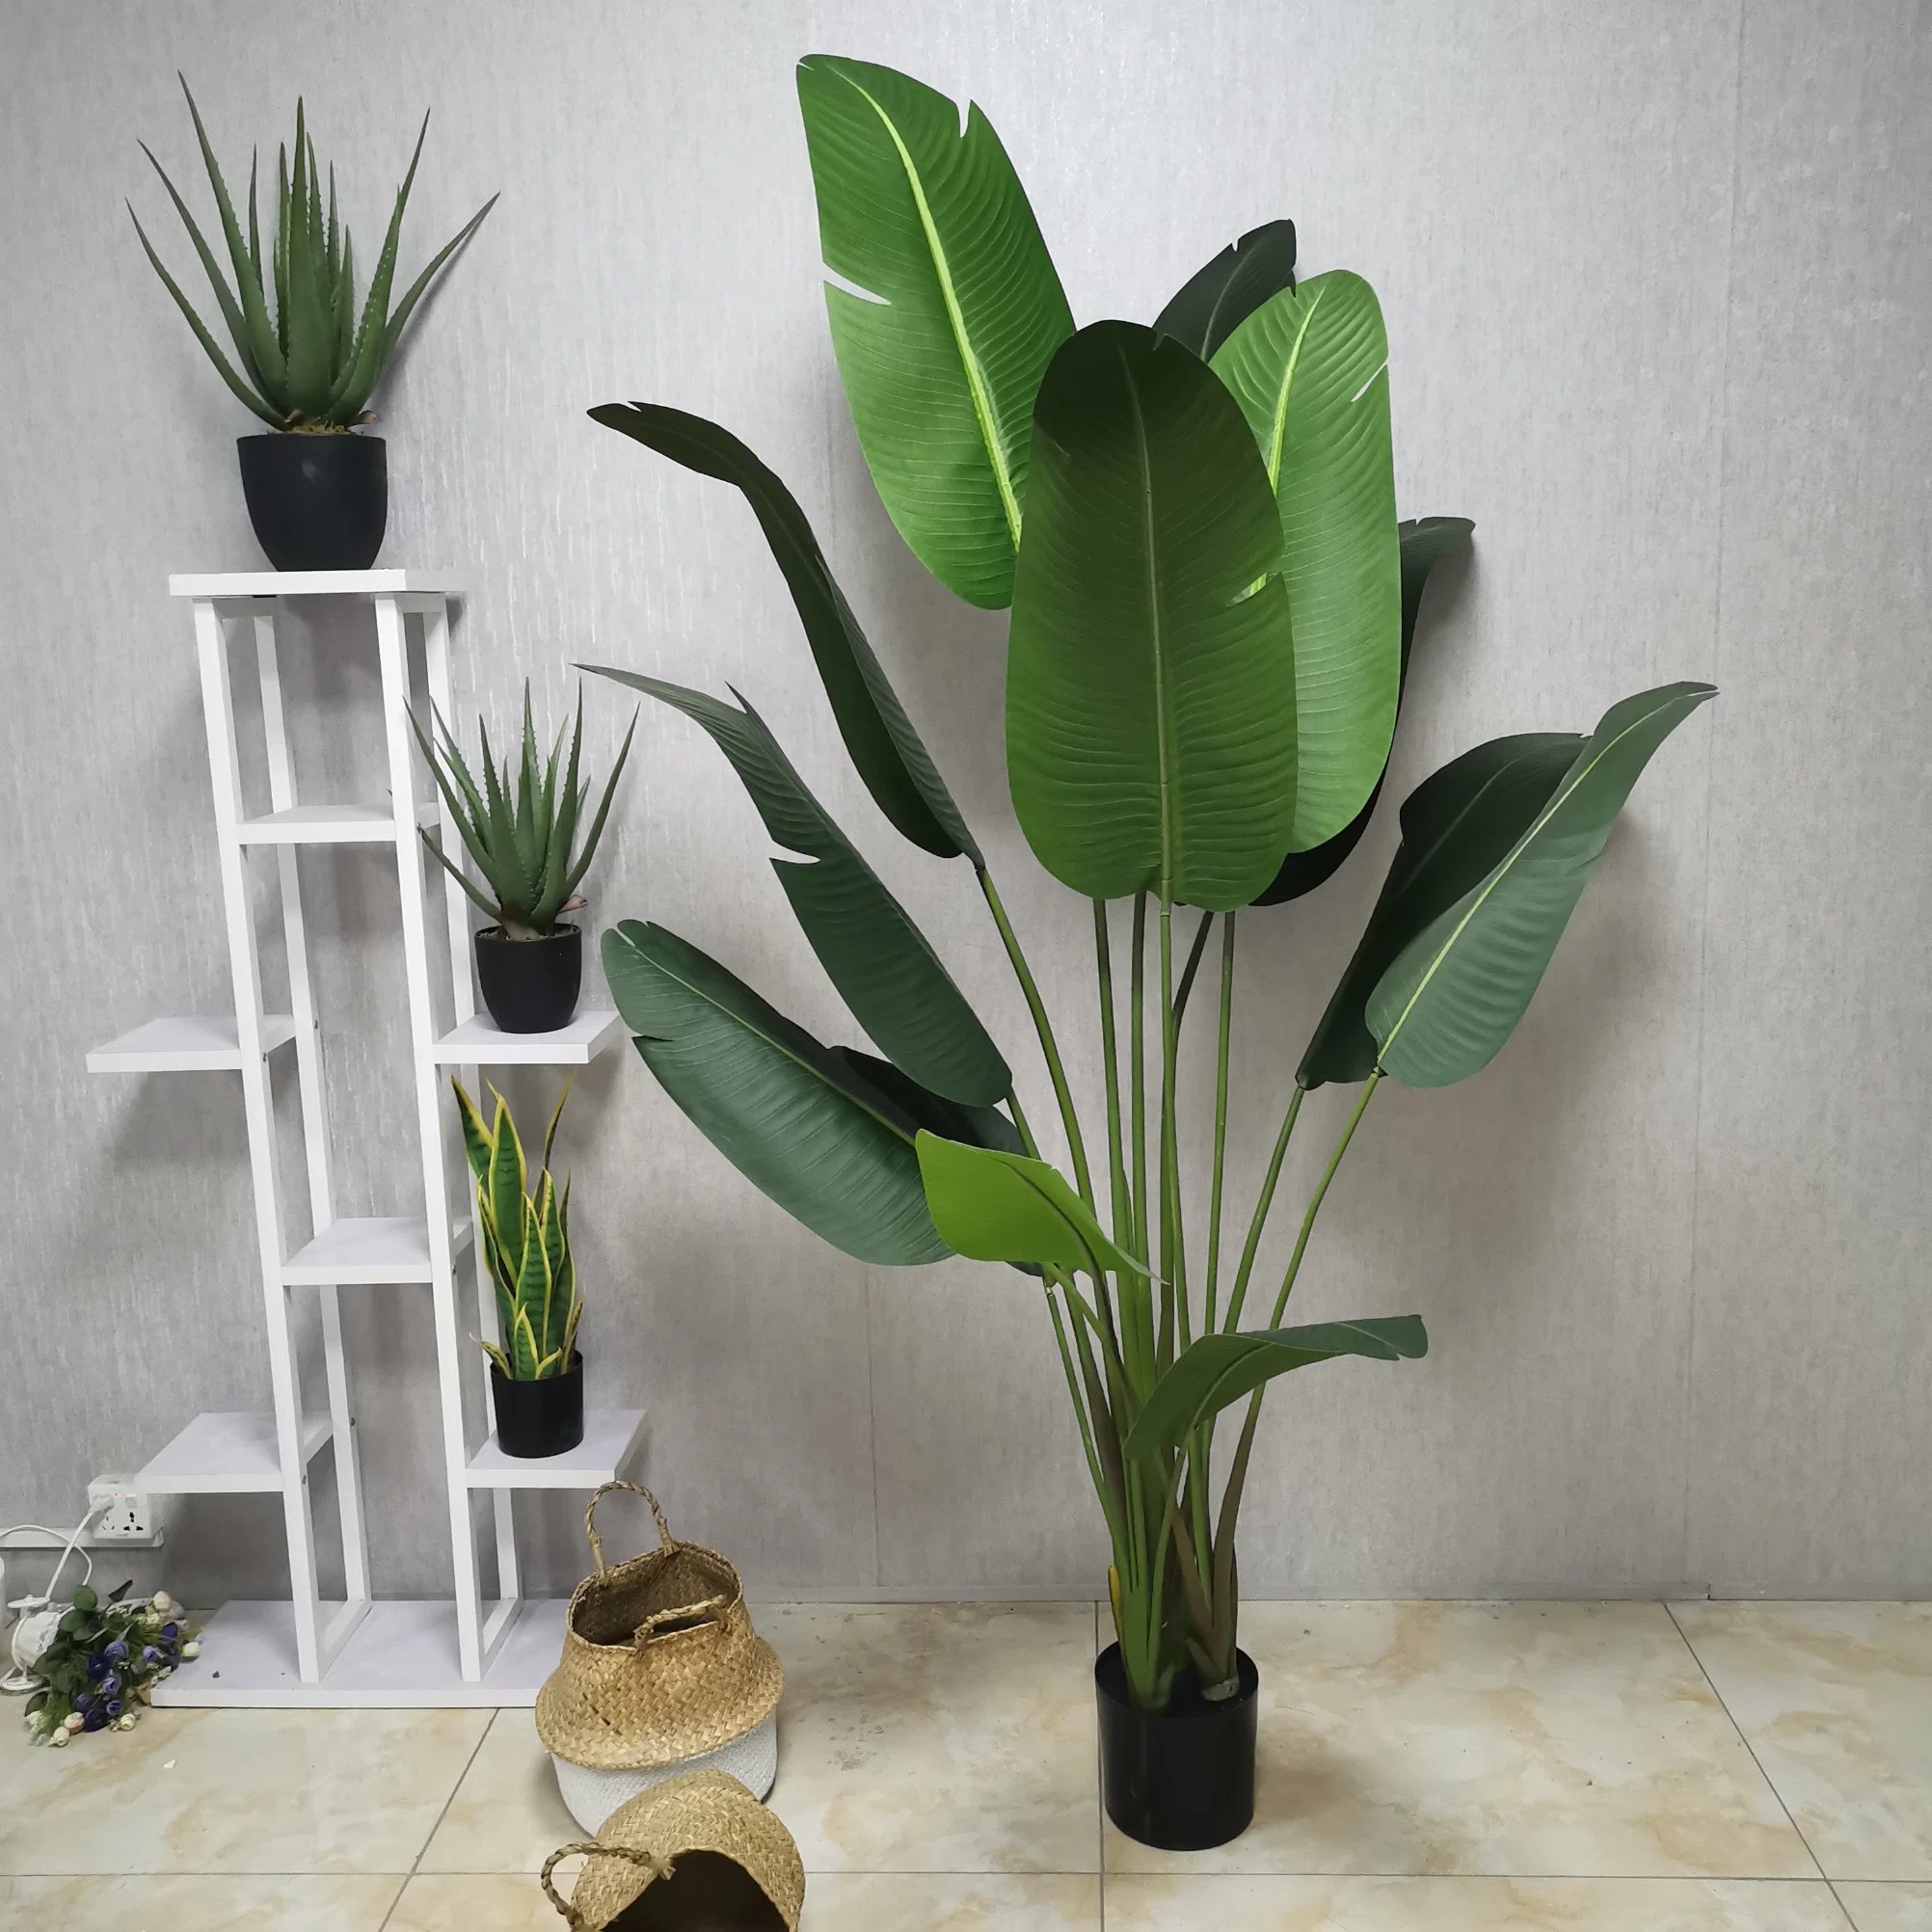 Оптовая торговля бонсай фо растения пластиковые искусственные путешественников' S банан украшено растениями декор для установки внутри помещений